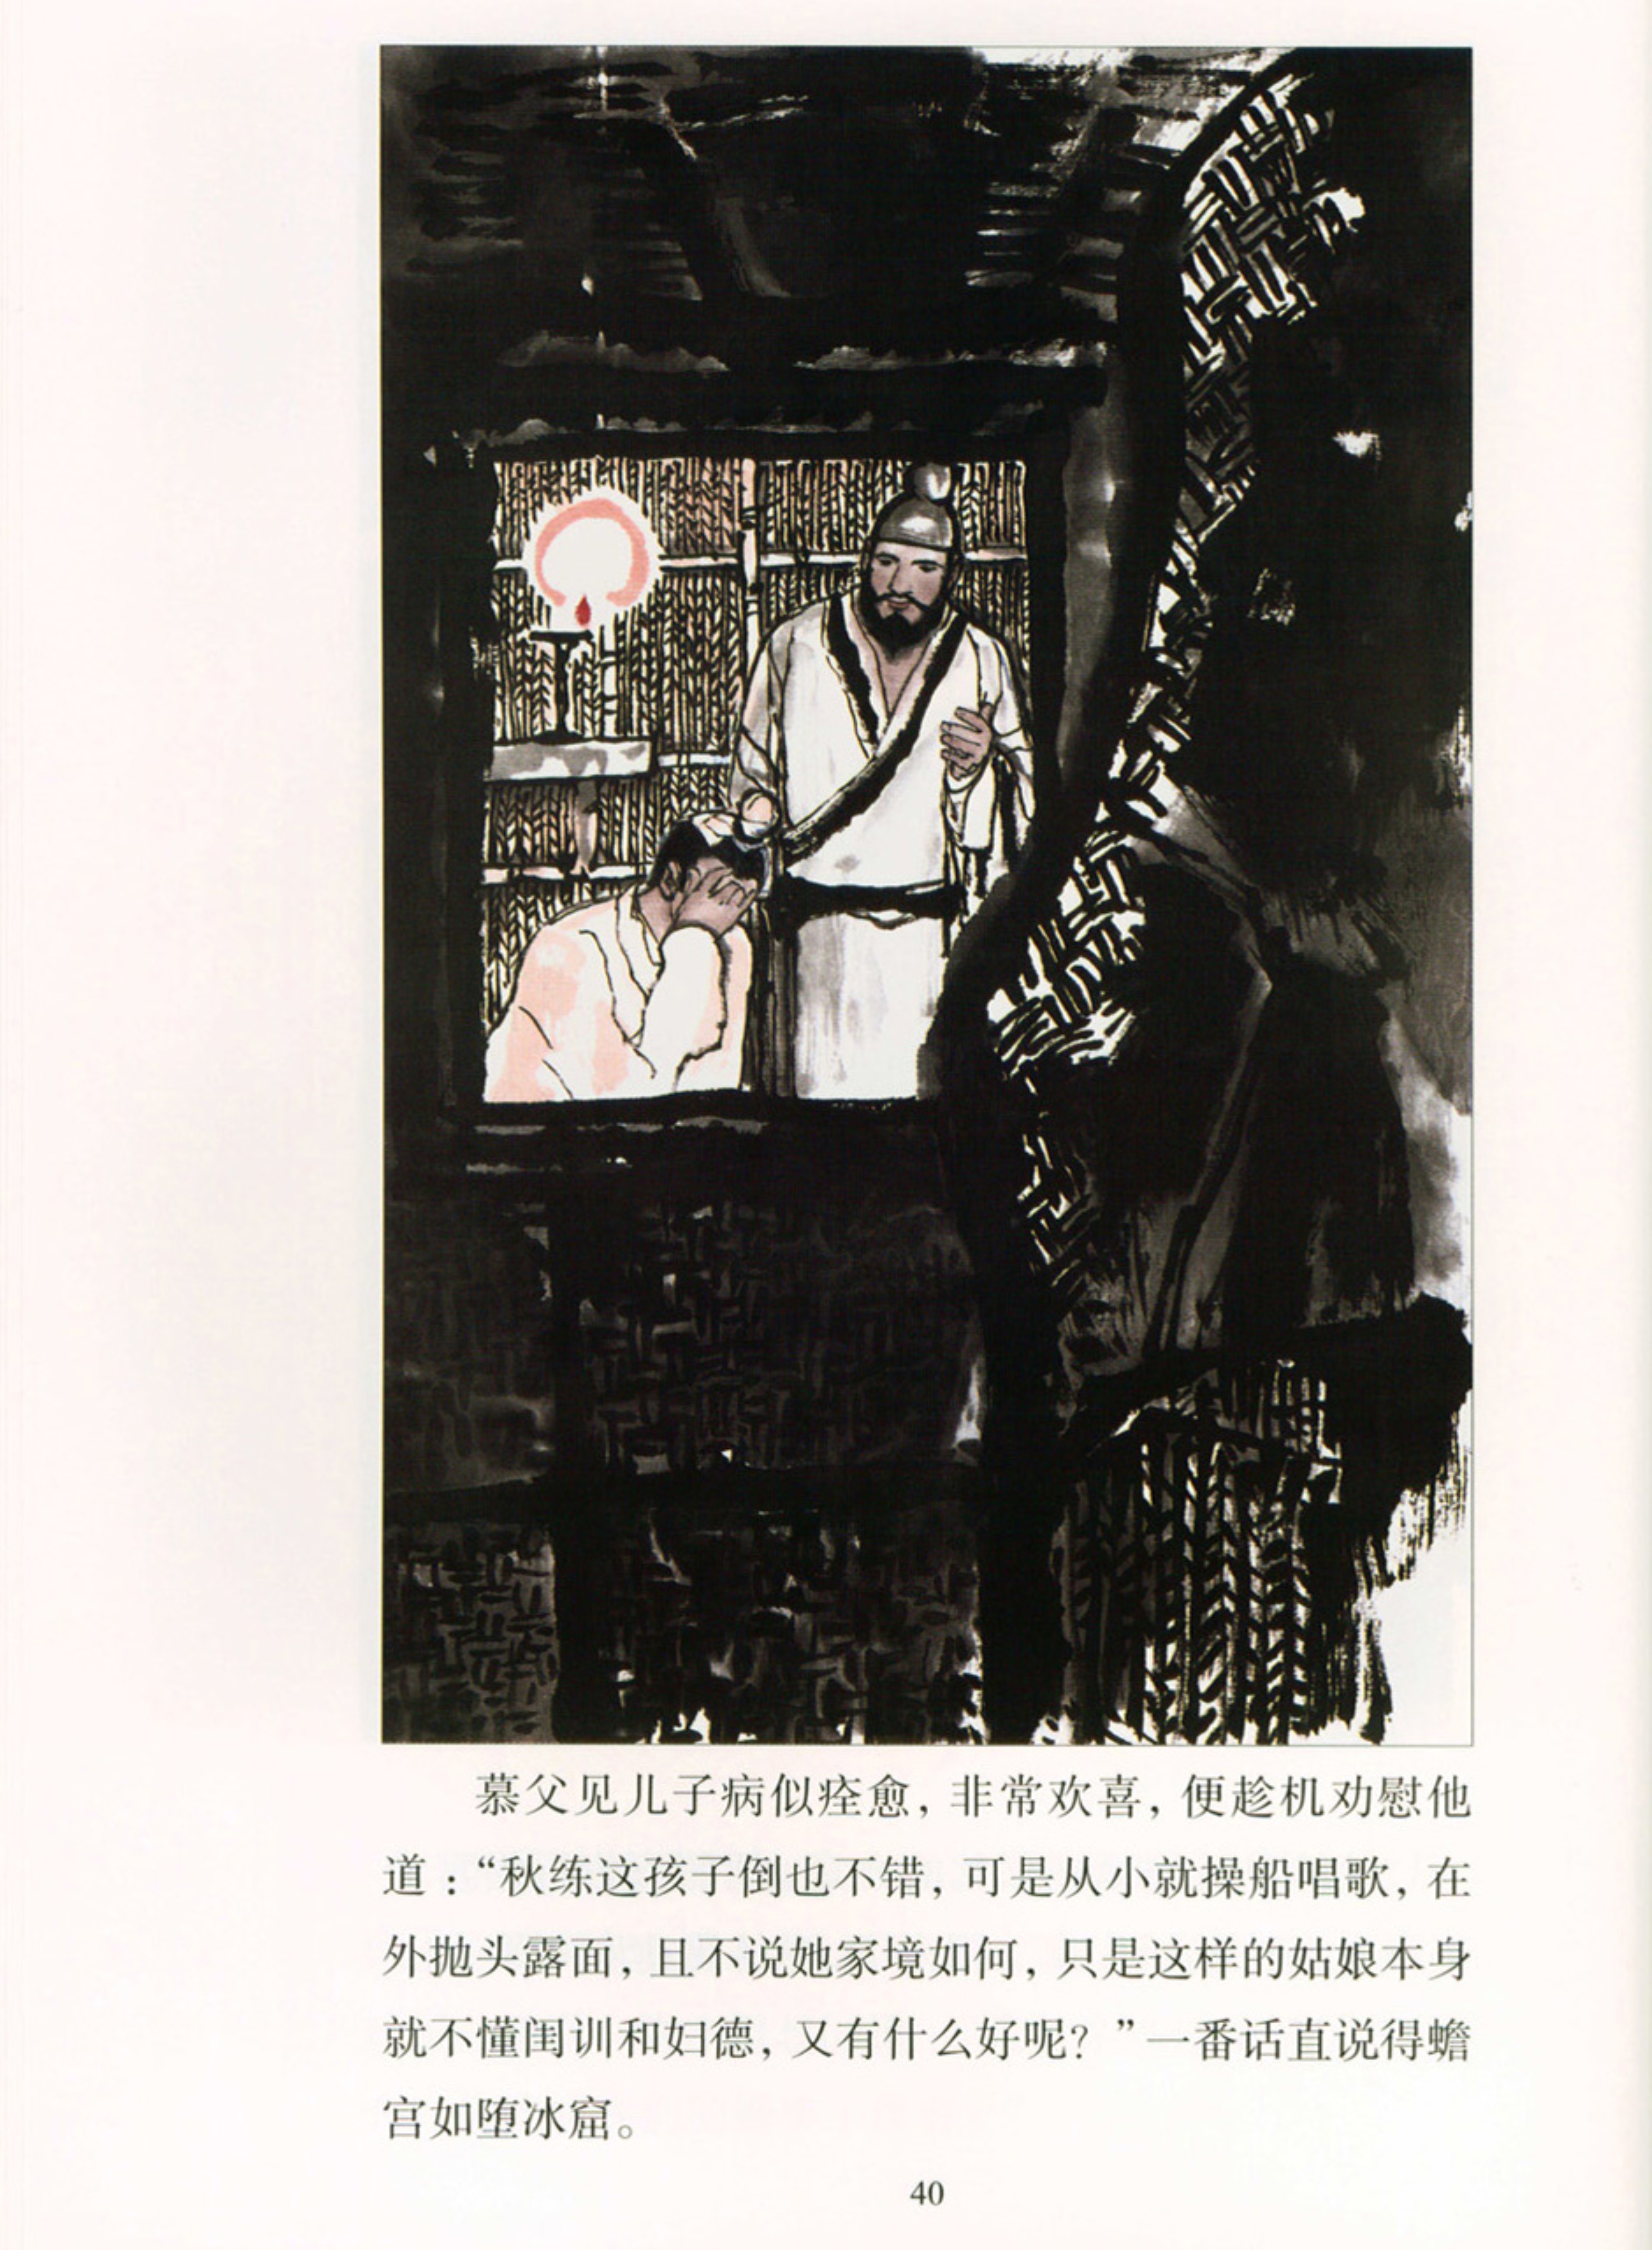 彩绘连环画欣赏——《聊斋志异》20《白秋练》，江苏美术出版社